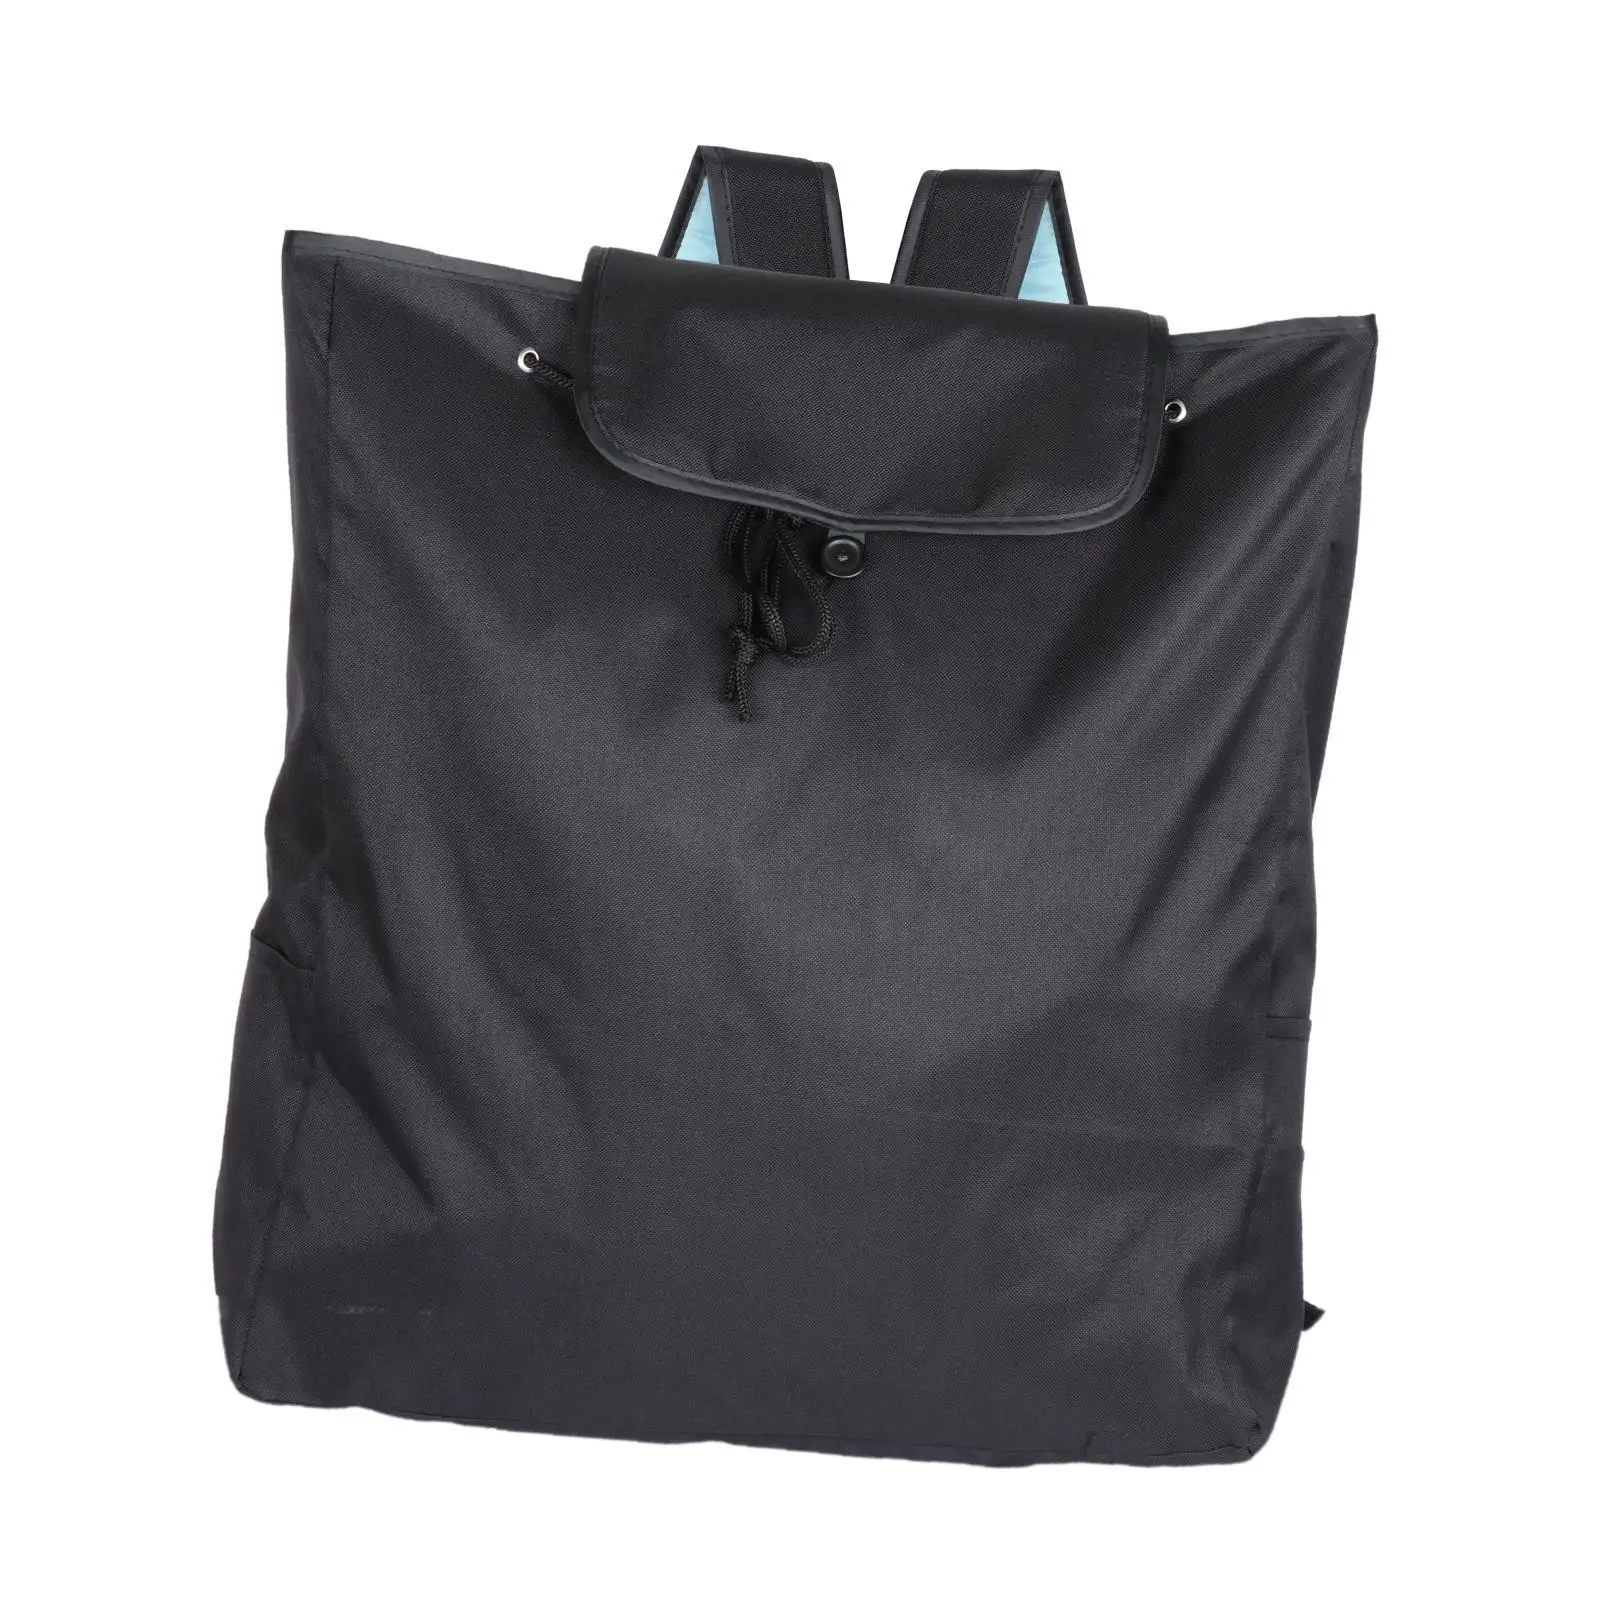 Stroller Backpack Dustproof Lightweight Adjustable Shoulder Strap Pram Organiser Bag for Airplane Travel